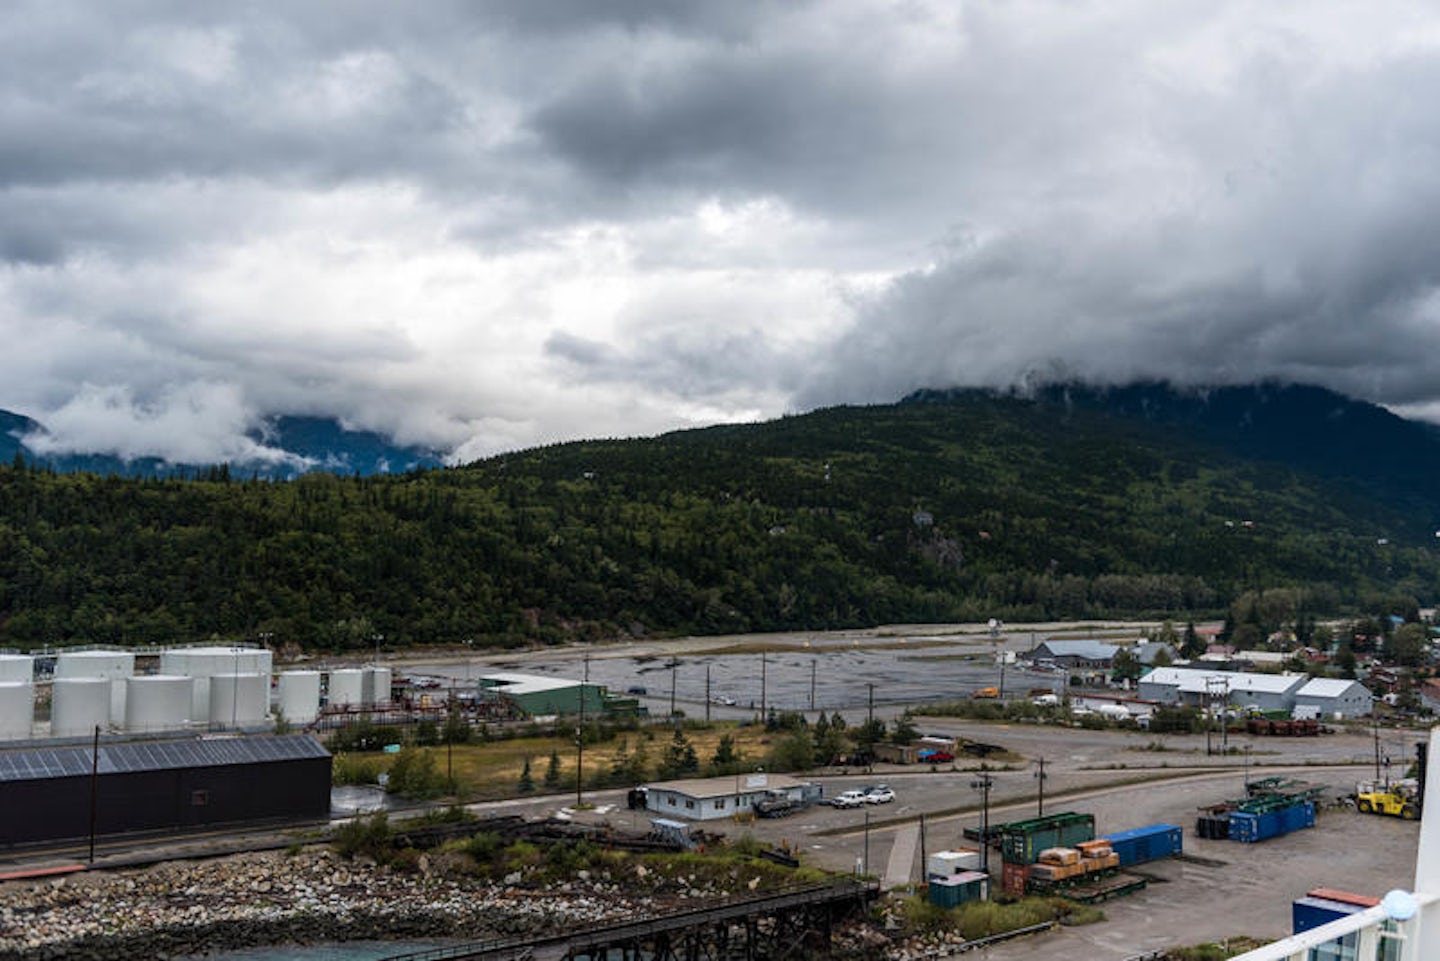 Port of Skagway, Alaska